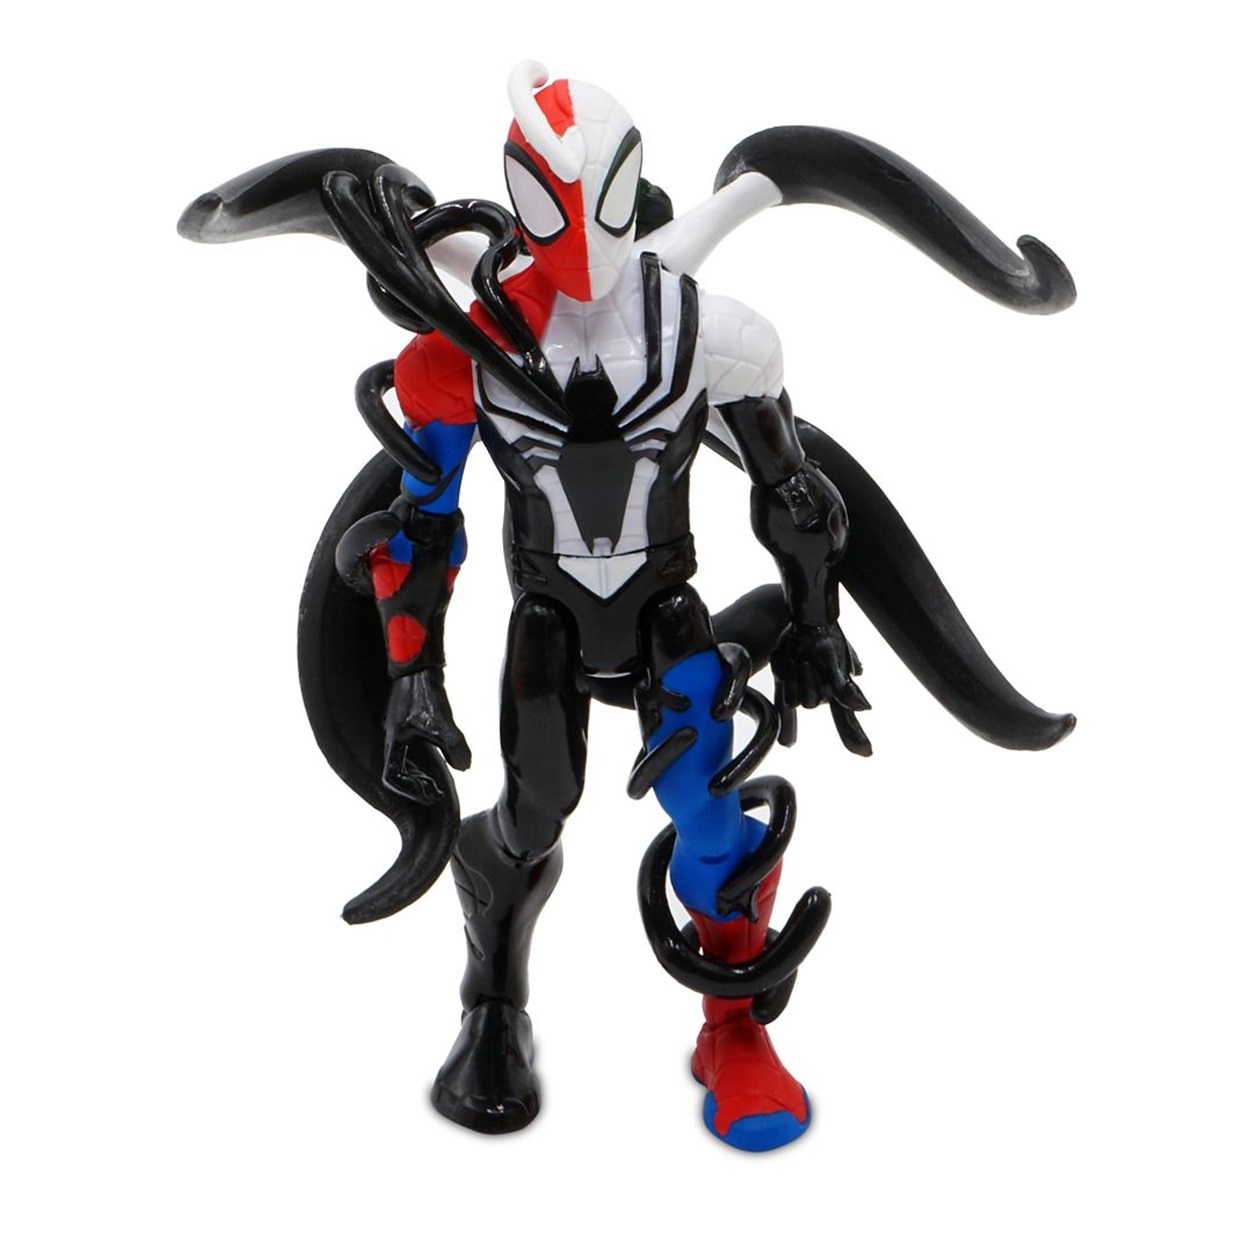 Paquete Venomized Spider Man #22 Toybox + #598 Funko Pop!